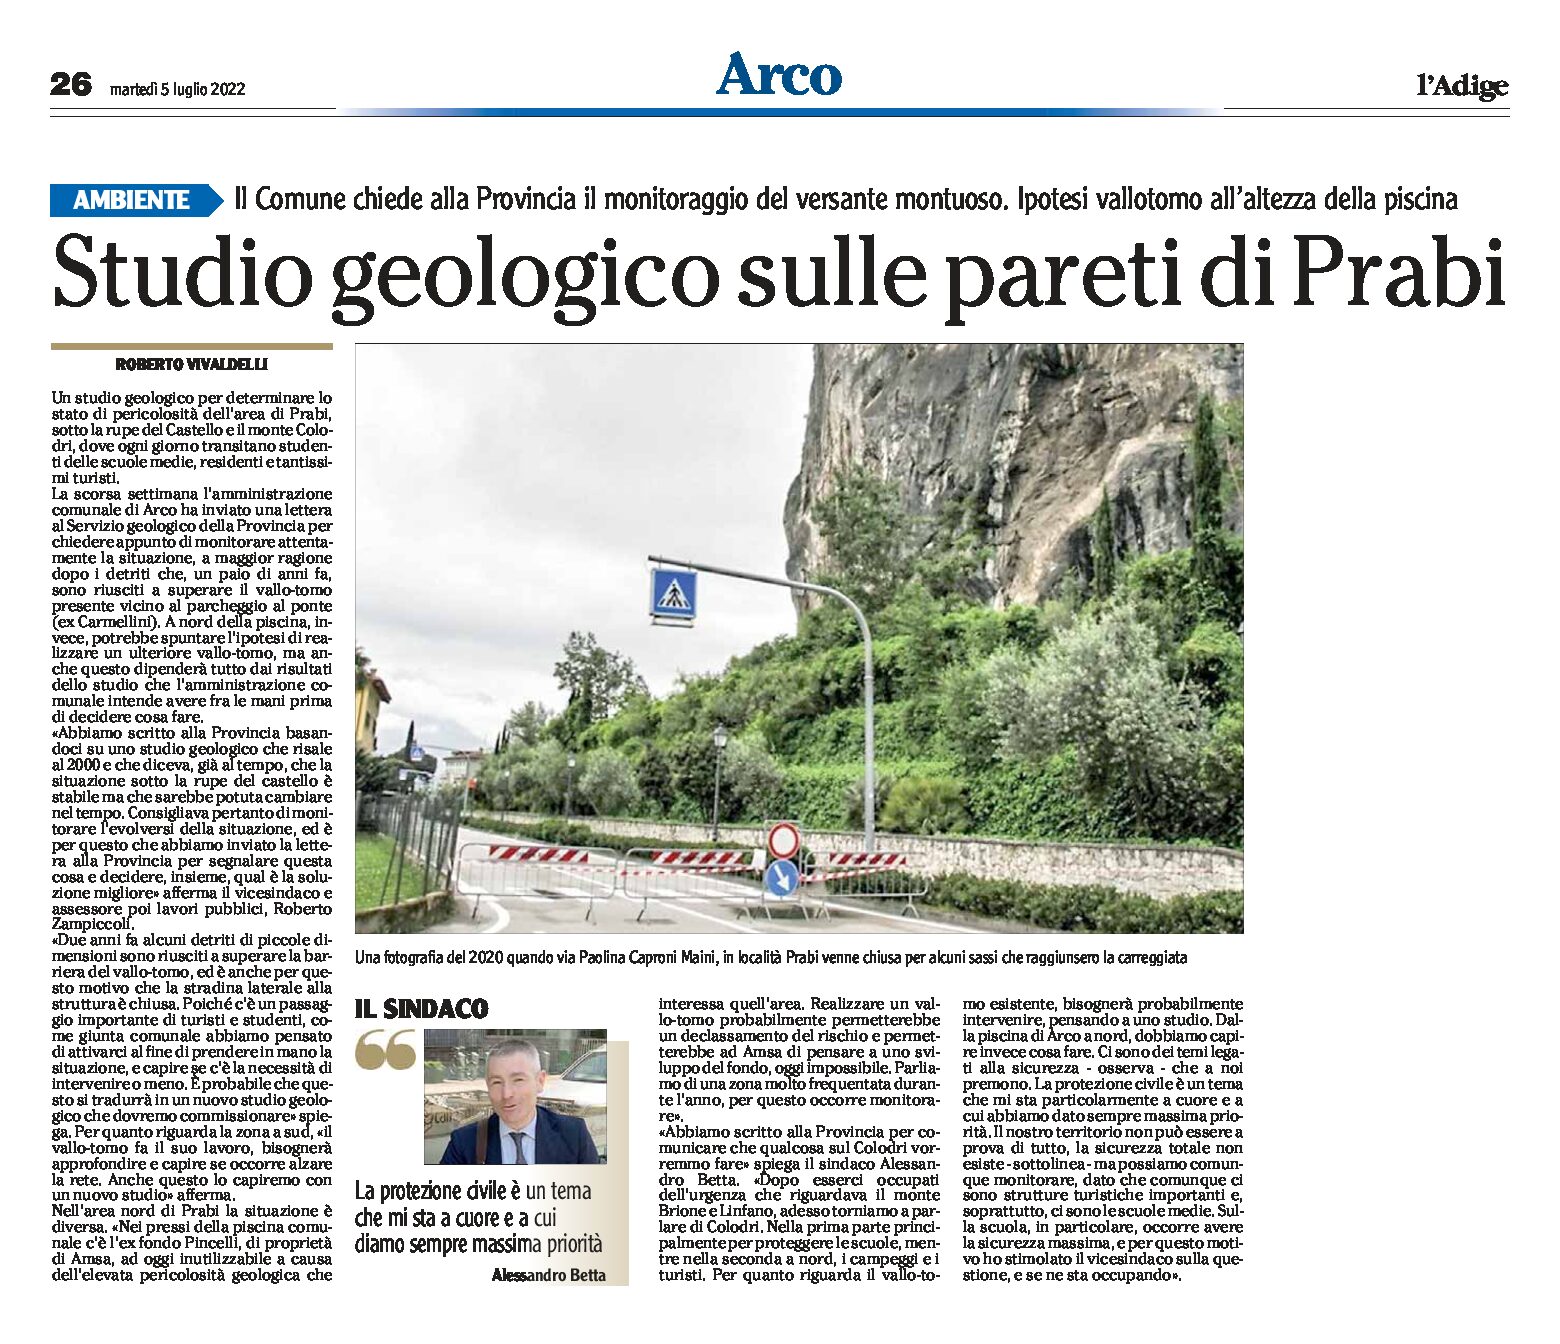 Arco: studio geologico sulle pareti di Prabi. Il Comune chiede alla Provincia il monitoraggio del versante montuoso